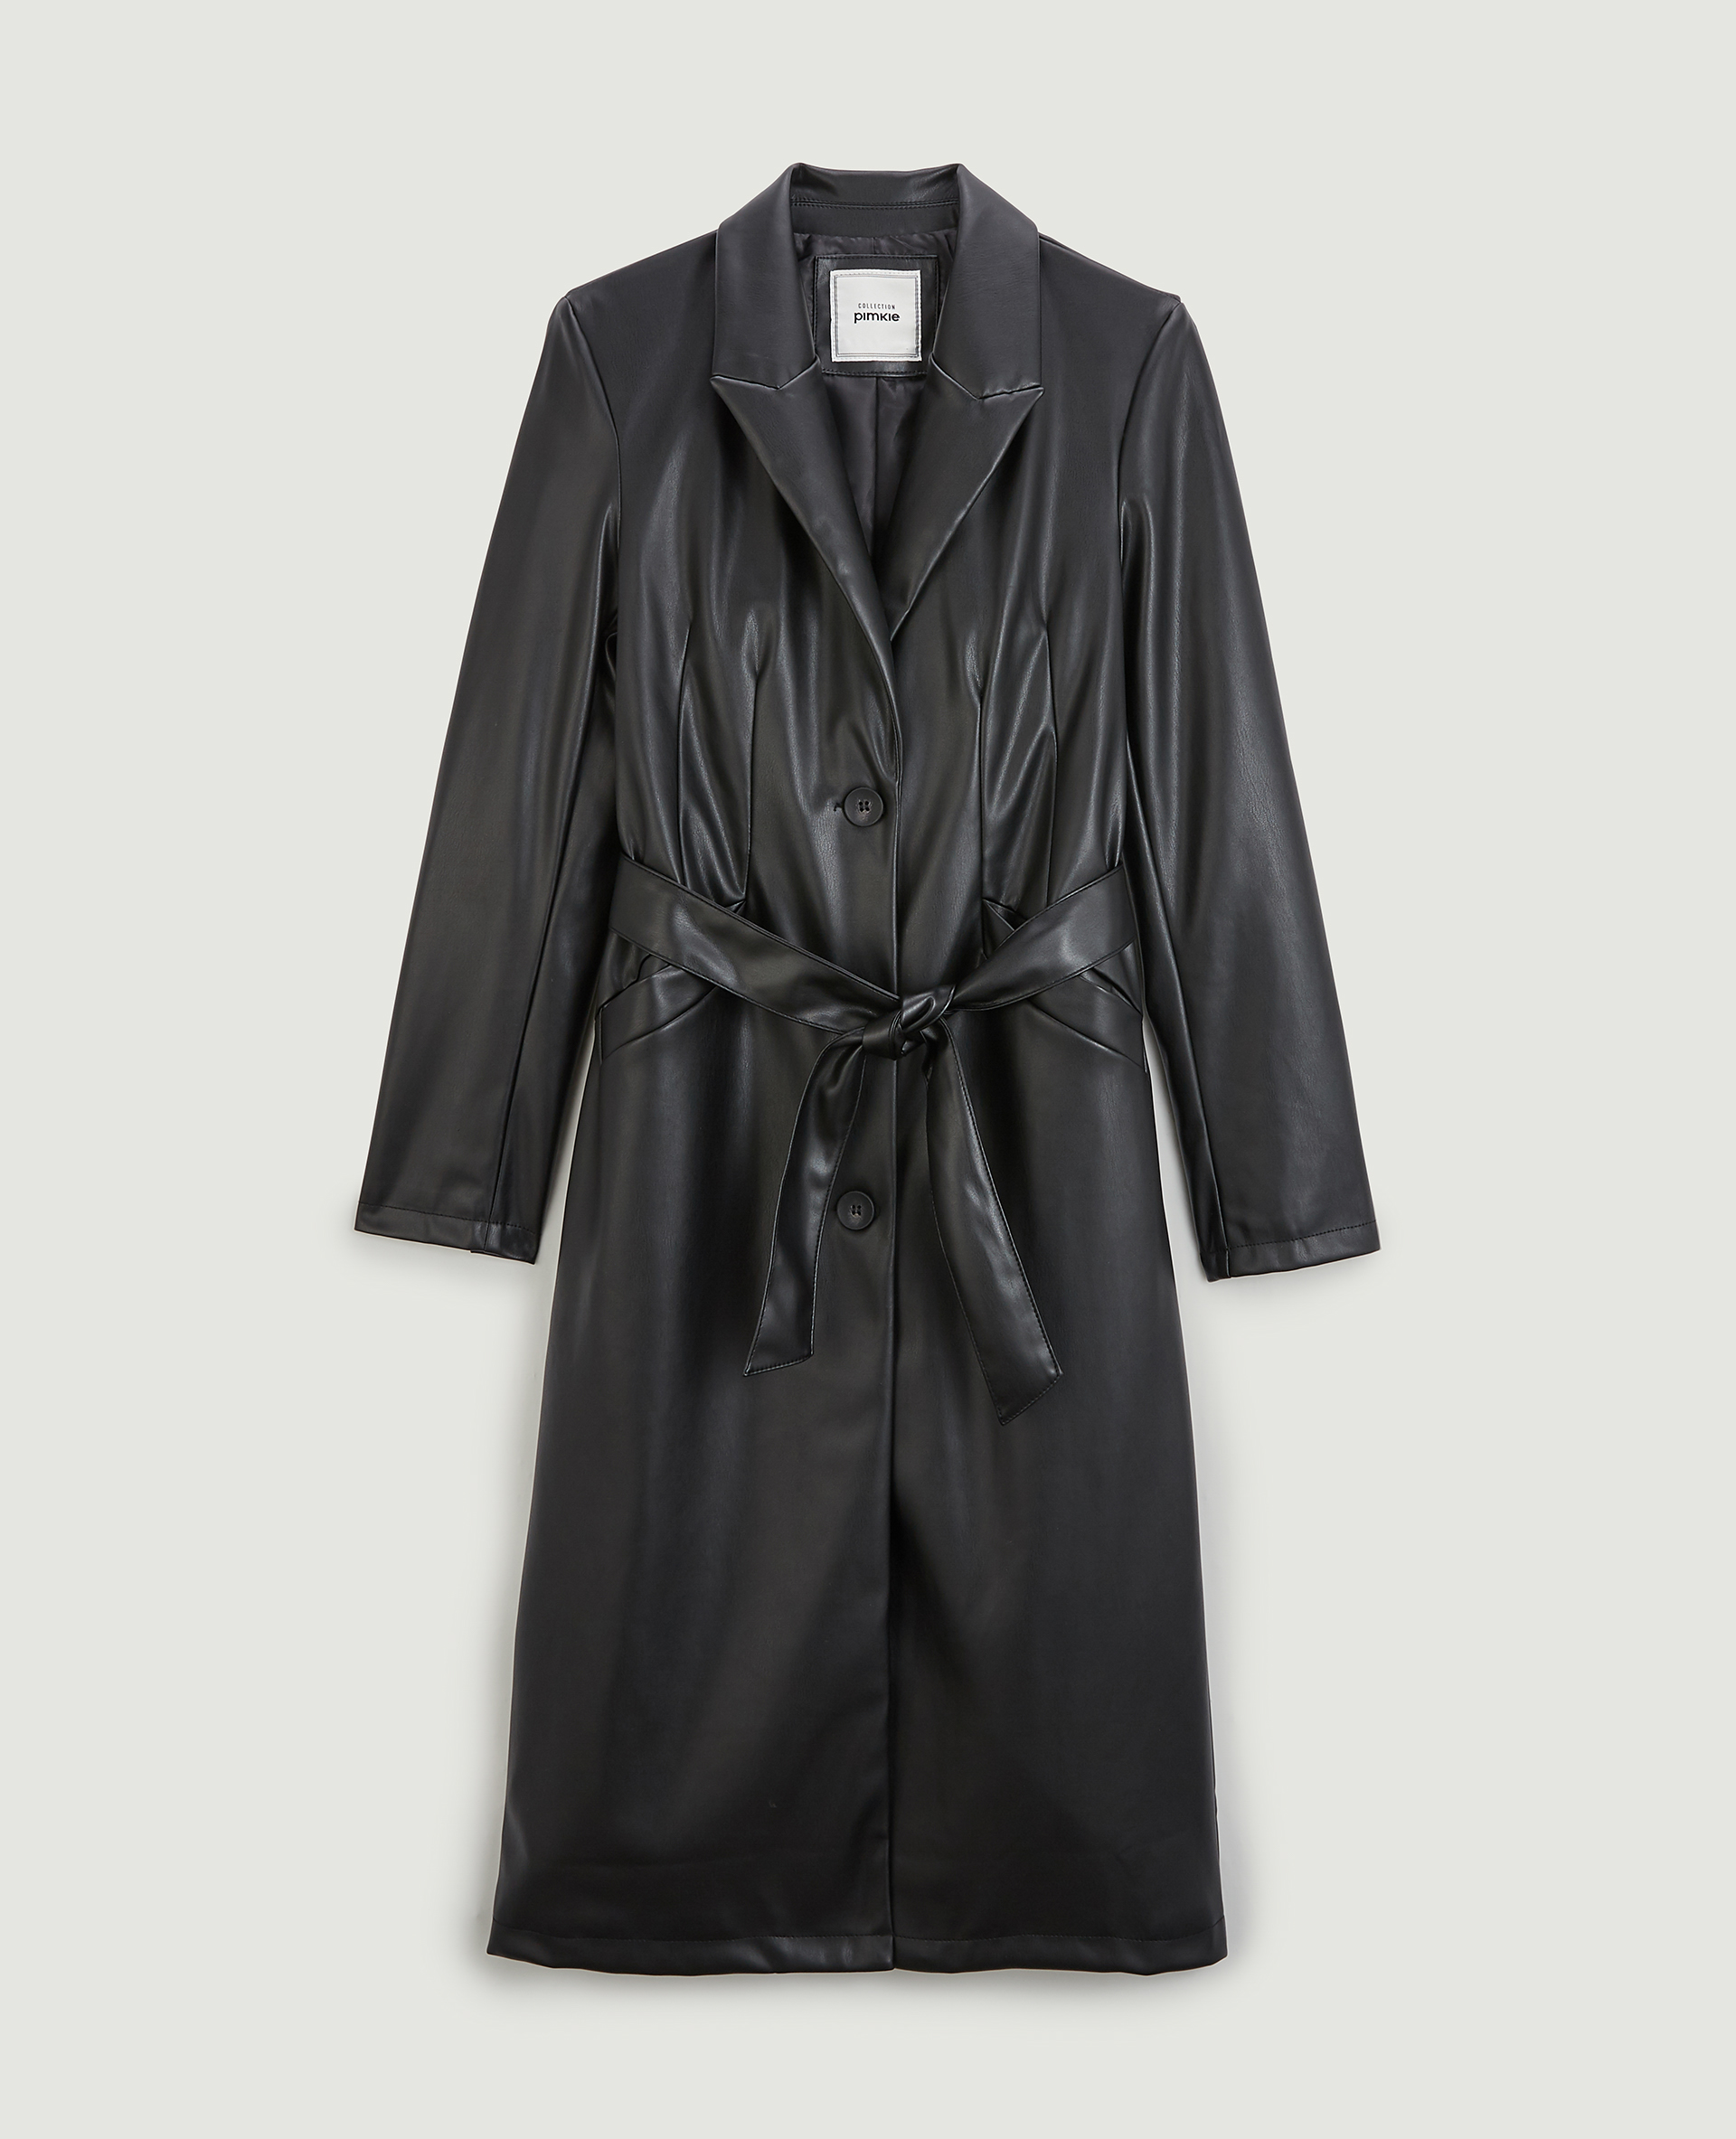 Manteau long simili cuir noir - Pimkie